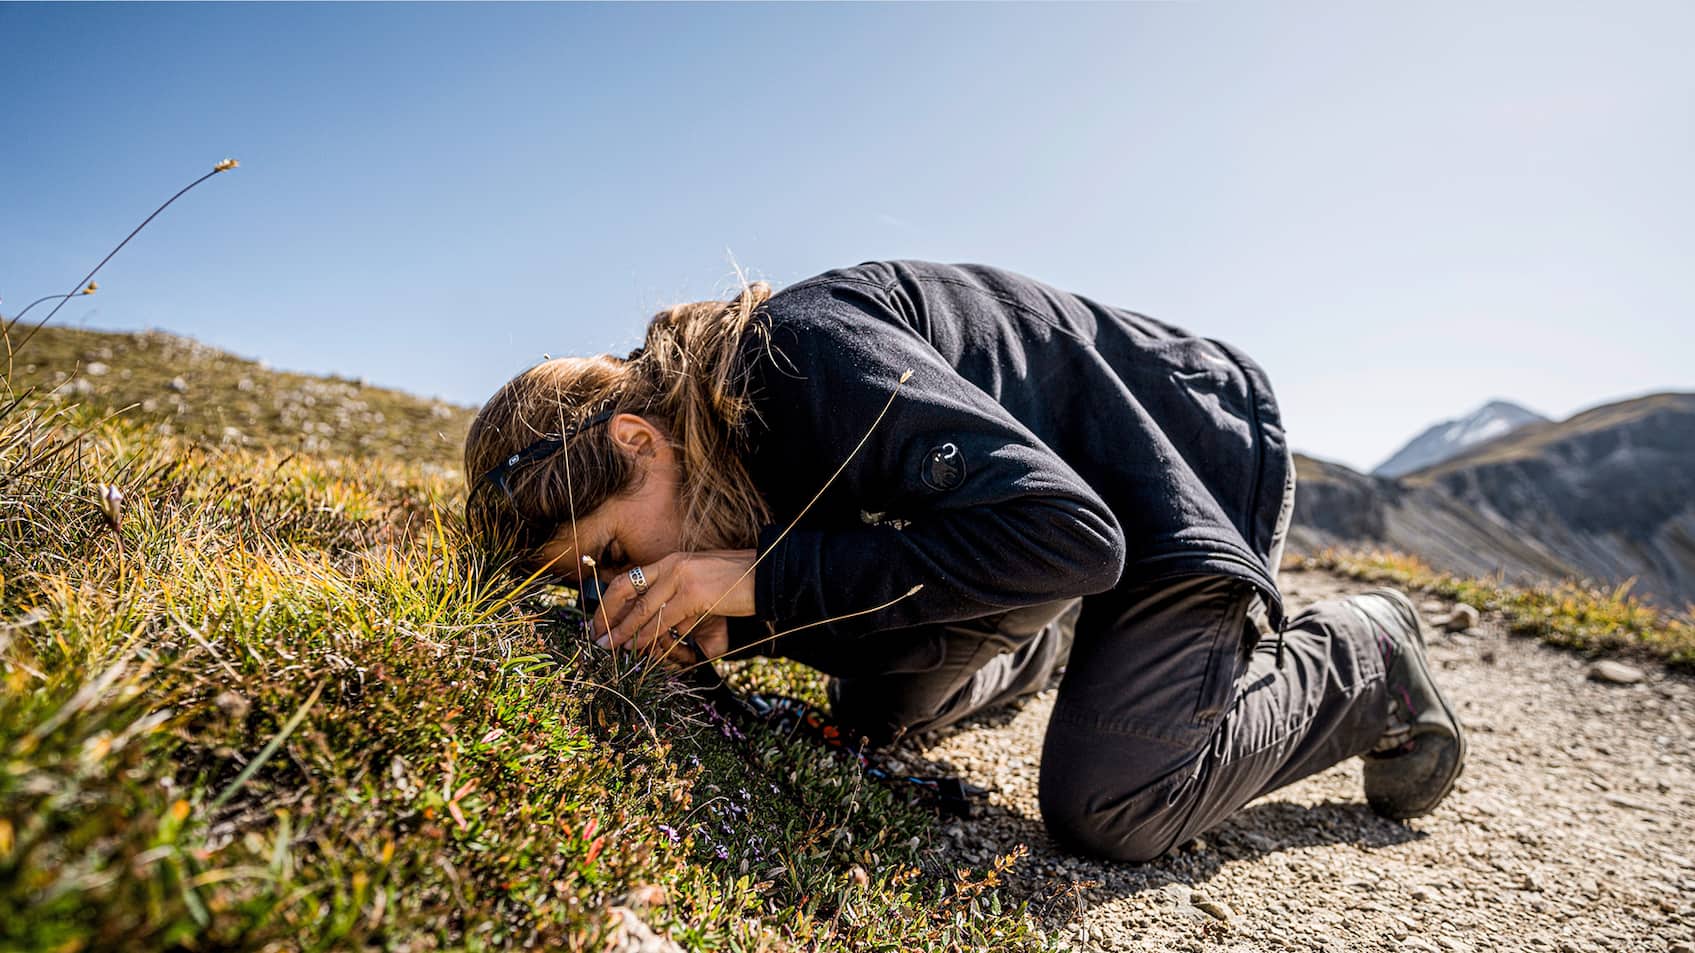 Forschungsobjekt Polsternelke: Biologin Sonja Wipf studiert eine der bedrängten alpinen Pflanzen.